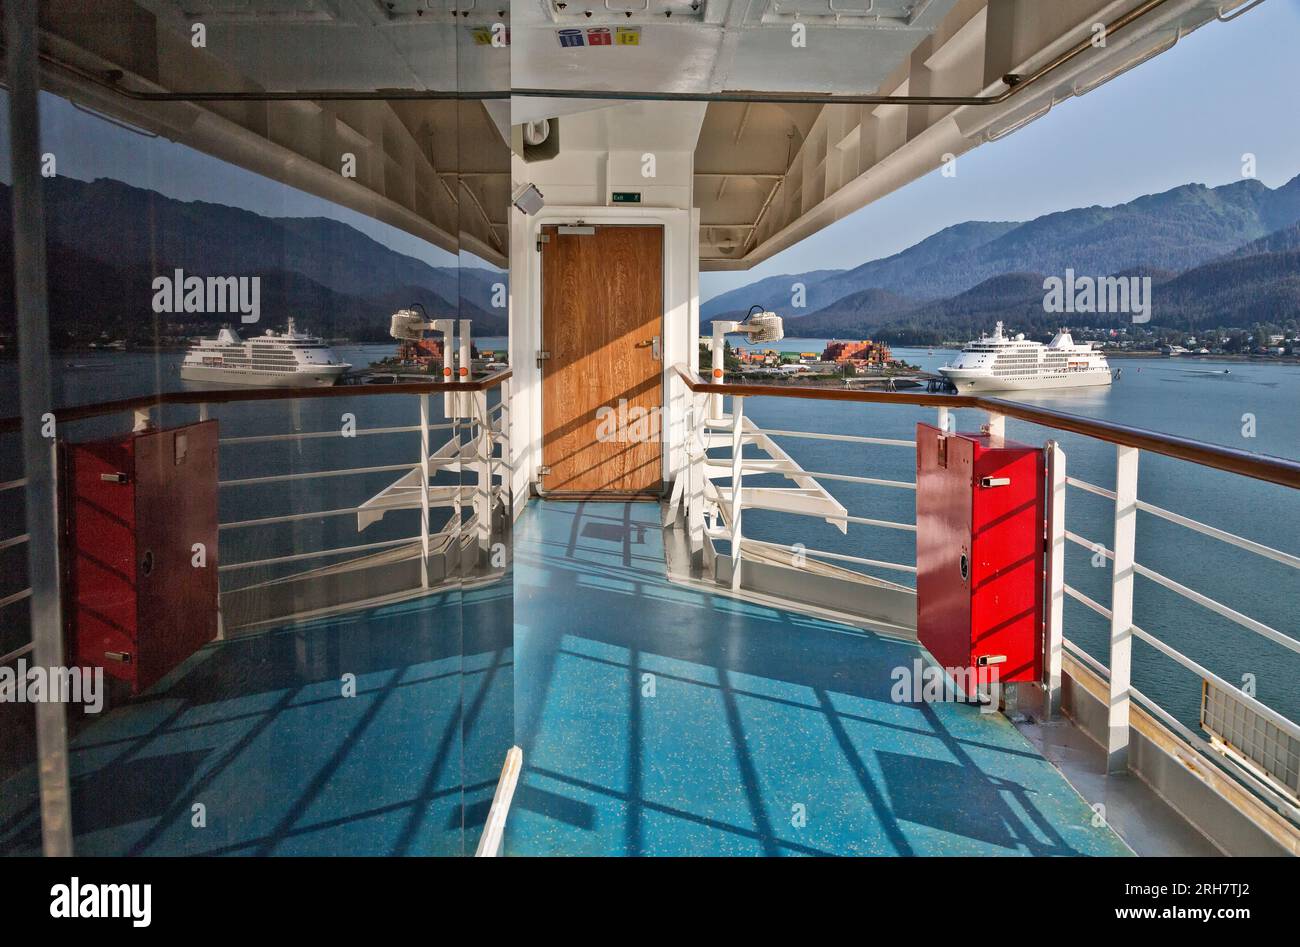 Riflettendo sulla finestra della nave da crociera Carnival luminosa, sulla nave da crociera ancorata e sul porto, con la costa di Juneau in lontananza, Alaska. Foto Stock